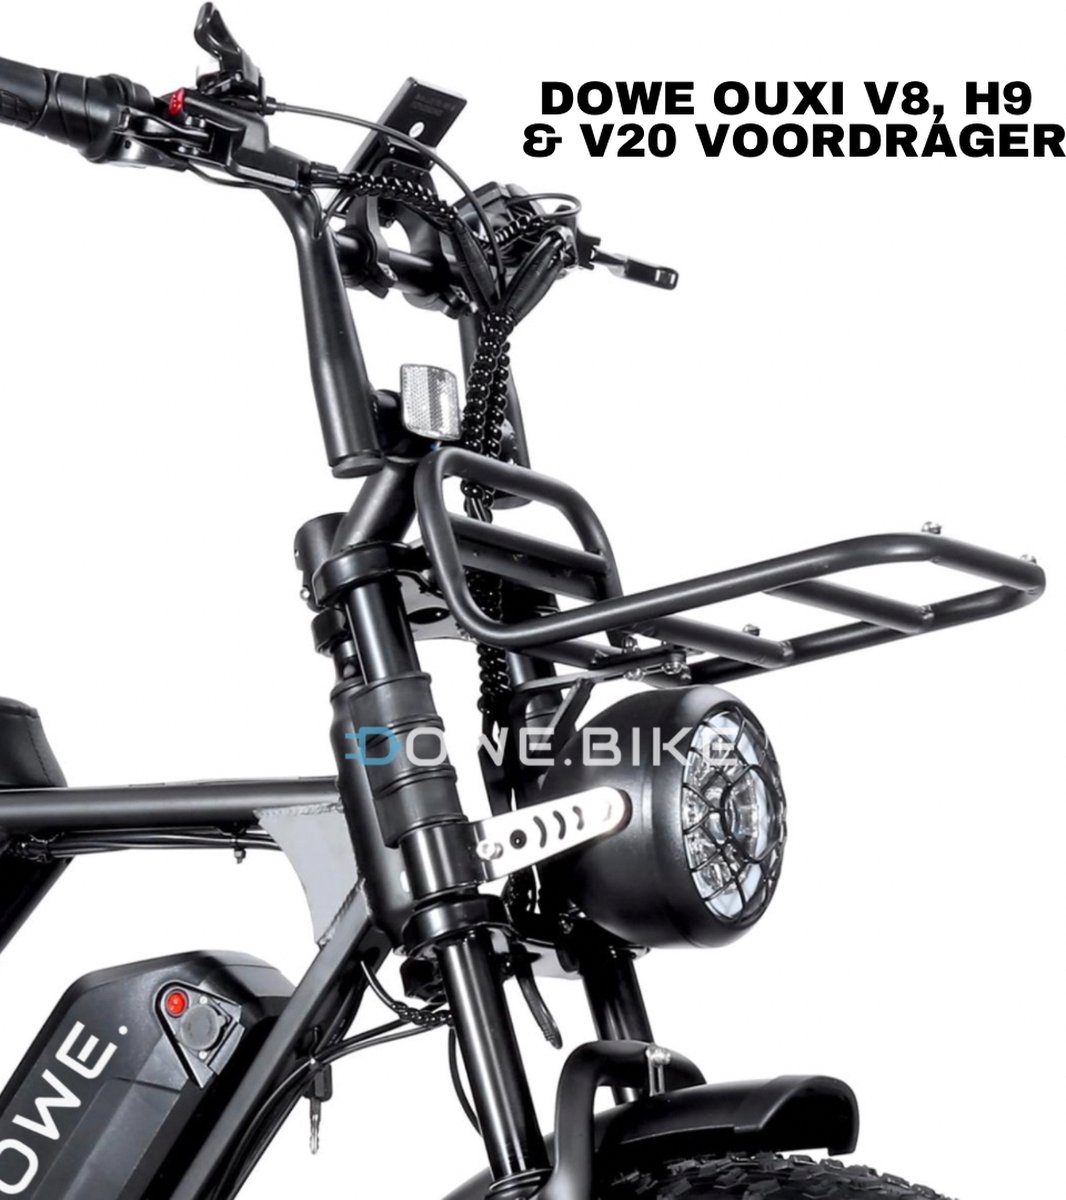 Voorrek DOWE X OUXI V8 Fatbike - Fatbike Voordrager - Voordrager V8 H9 V20